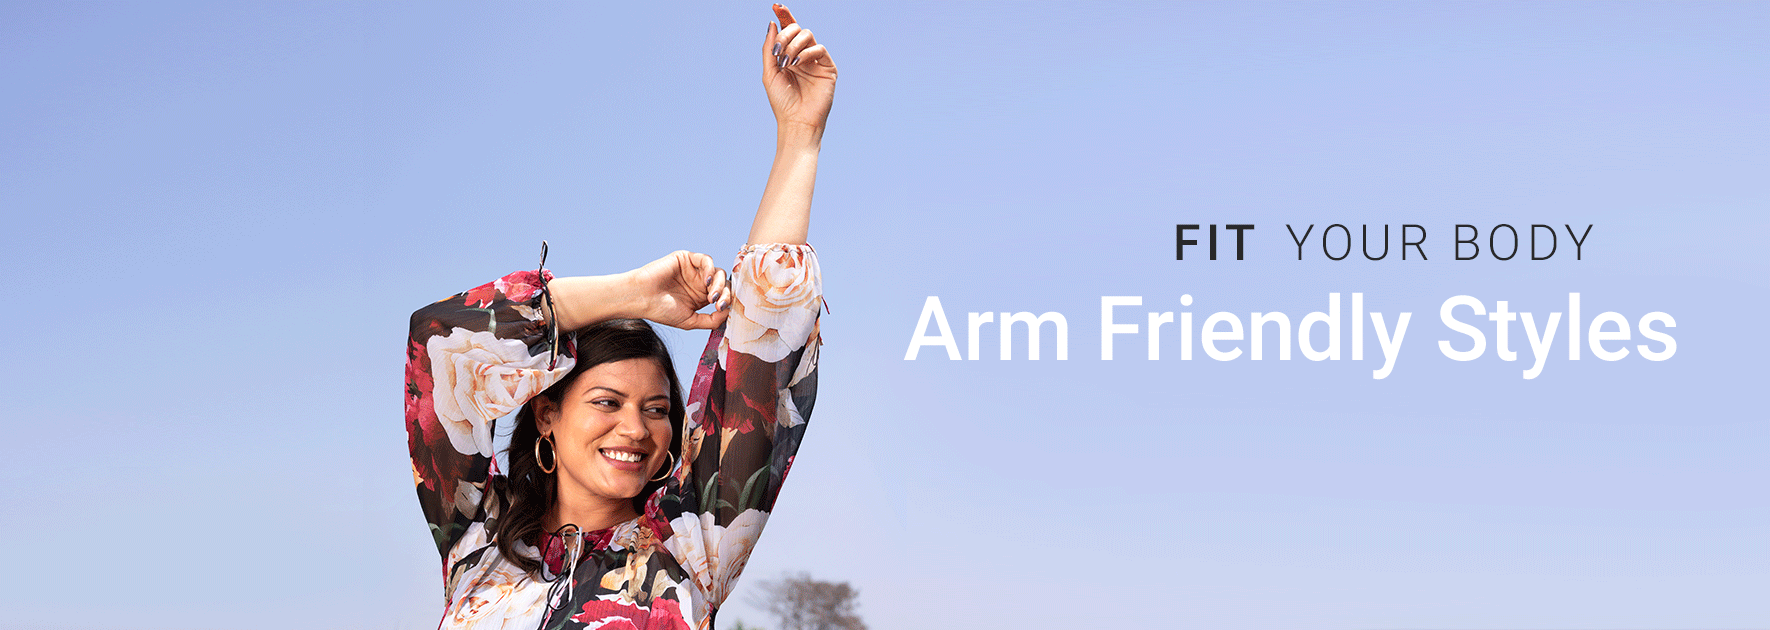 Arm Friendly